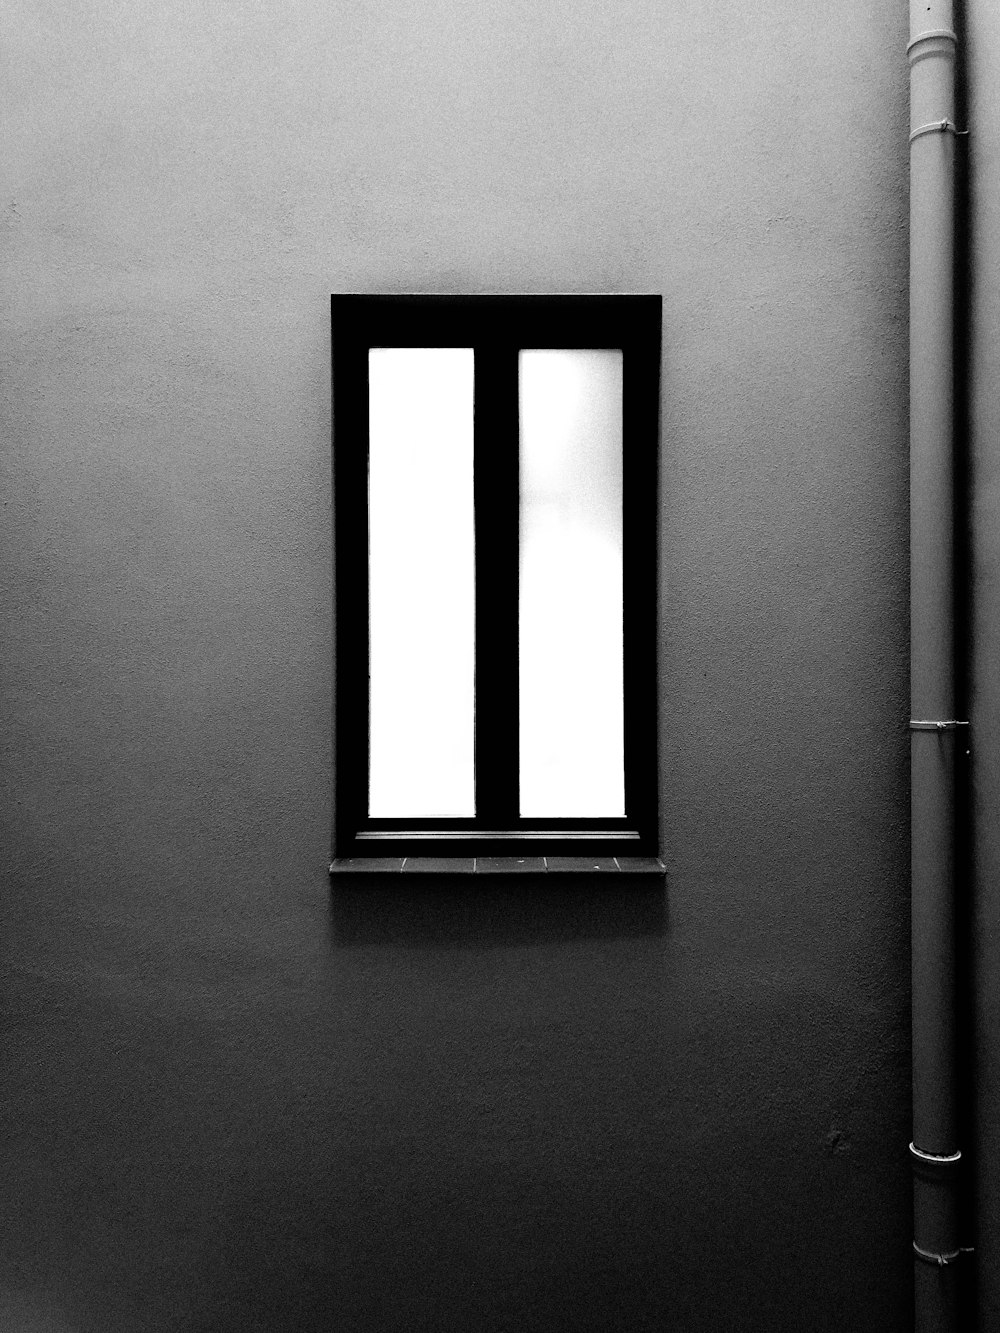 finestra chiusa con cornice nera vicino al muro